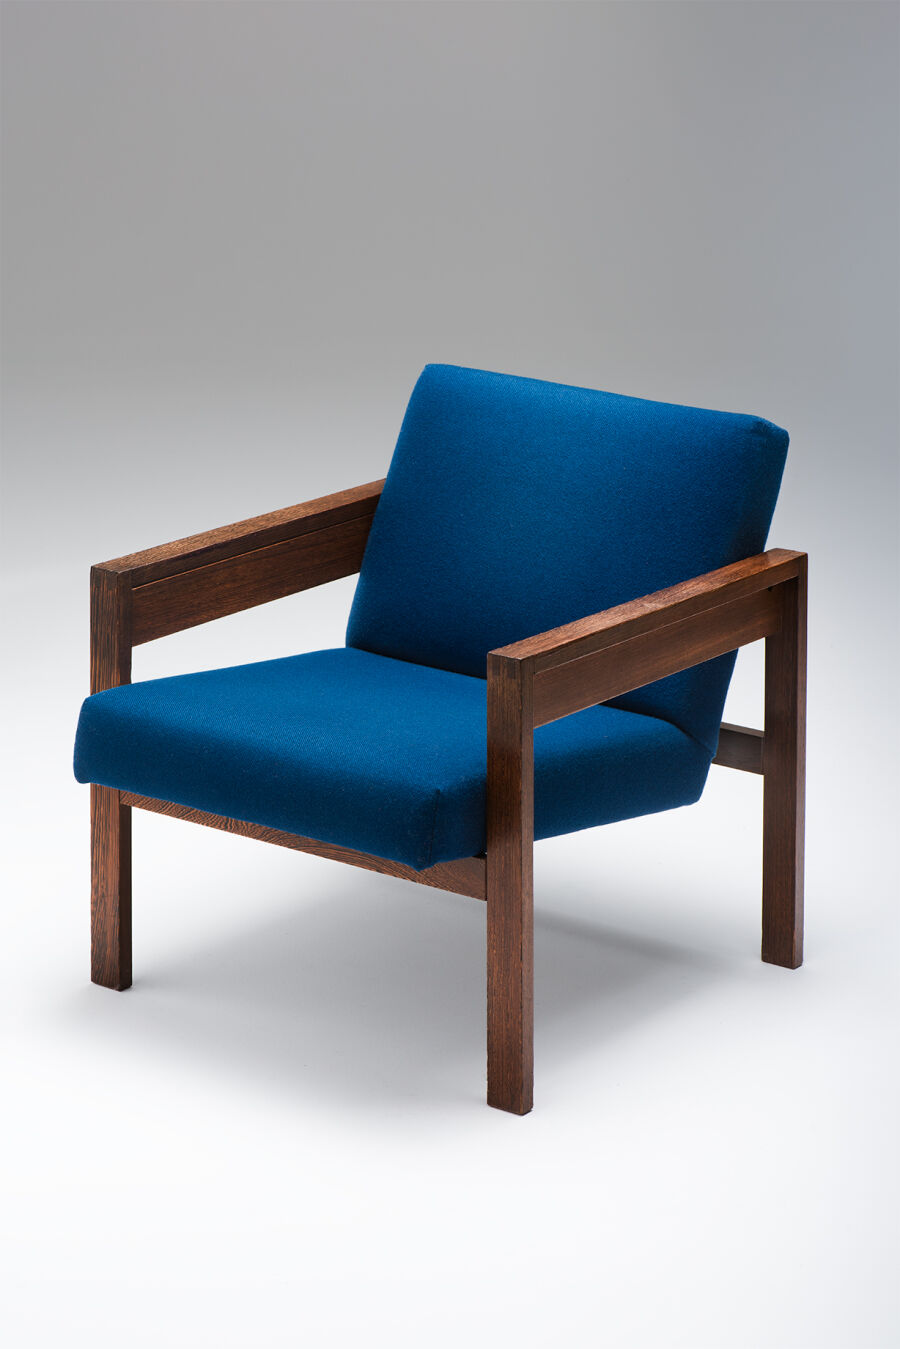 blauwe-chairs2QdbG